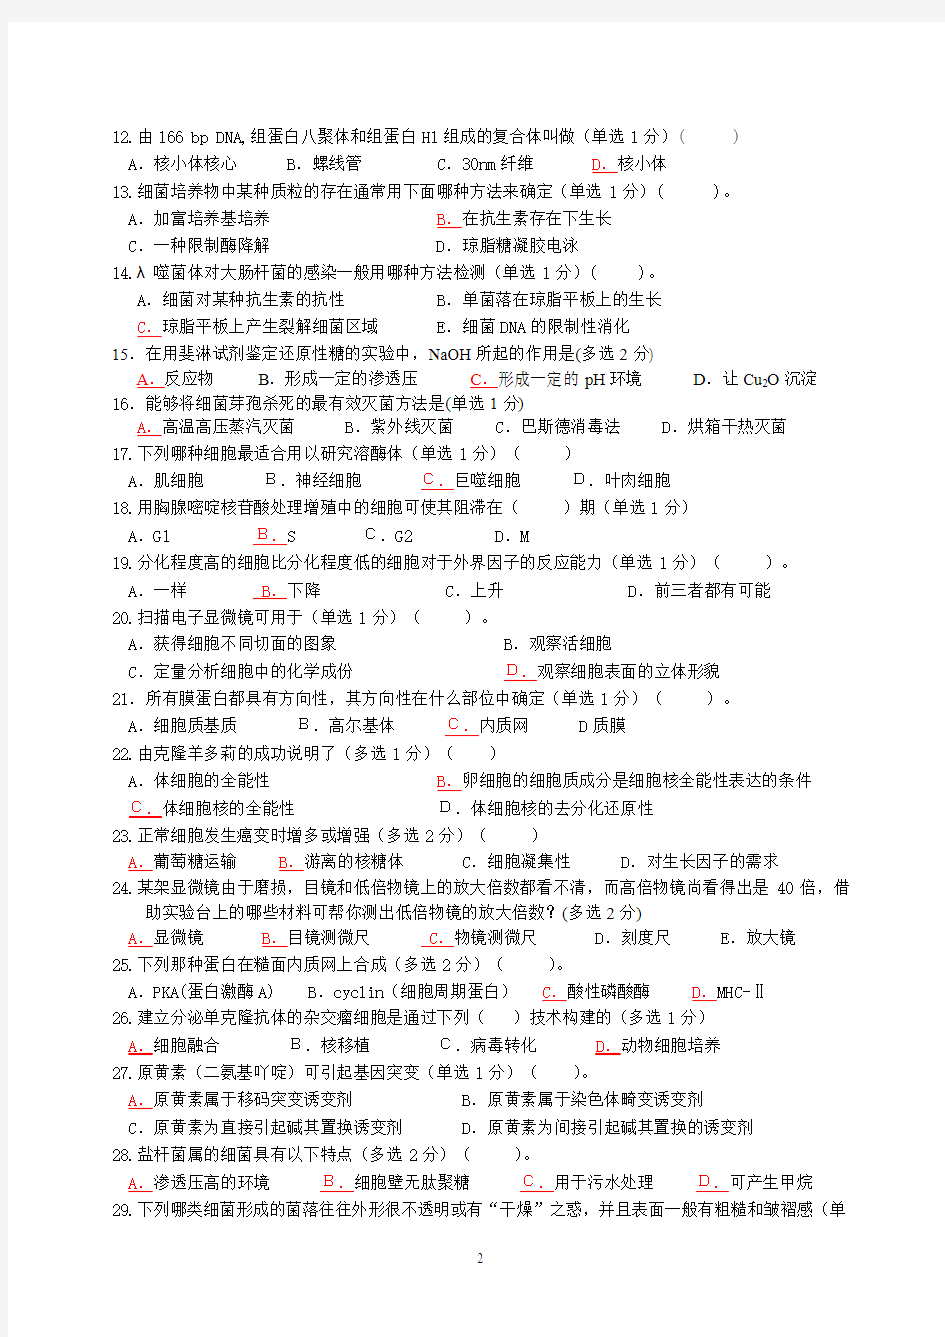 清北学堂2013年五一生物竞赛模拟押题试卷3含标记答案(苏宏鑫)